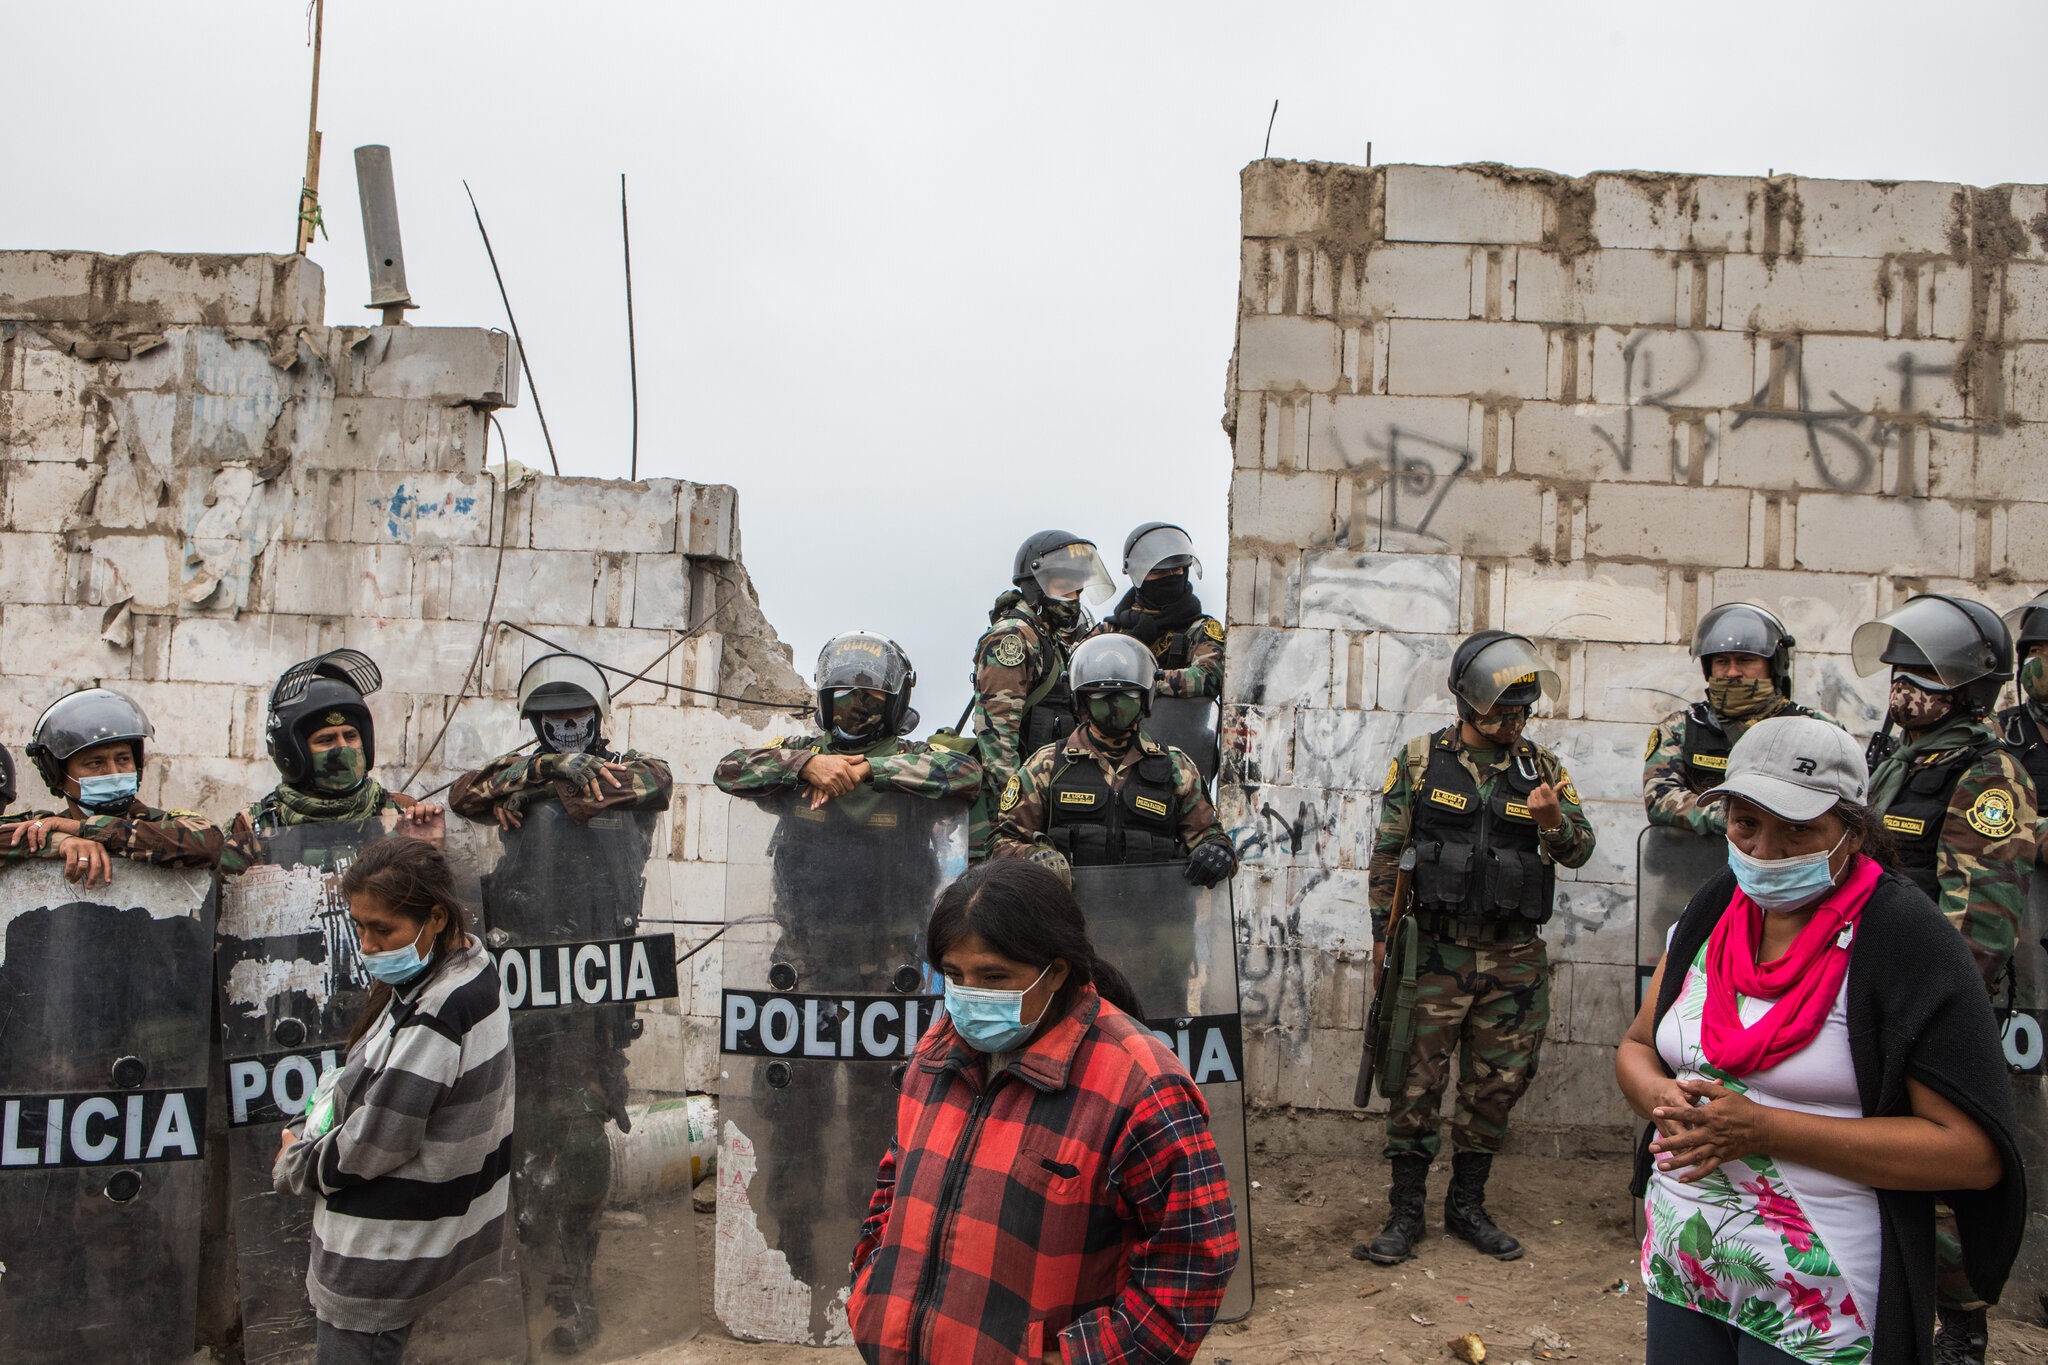 La policía desalojó a un grupo de personas que ocupaba terrenos públicos y privados en Lima. Foto: Marco Garro para The New York Times